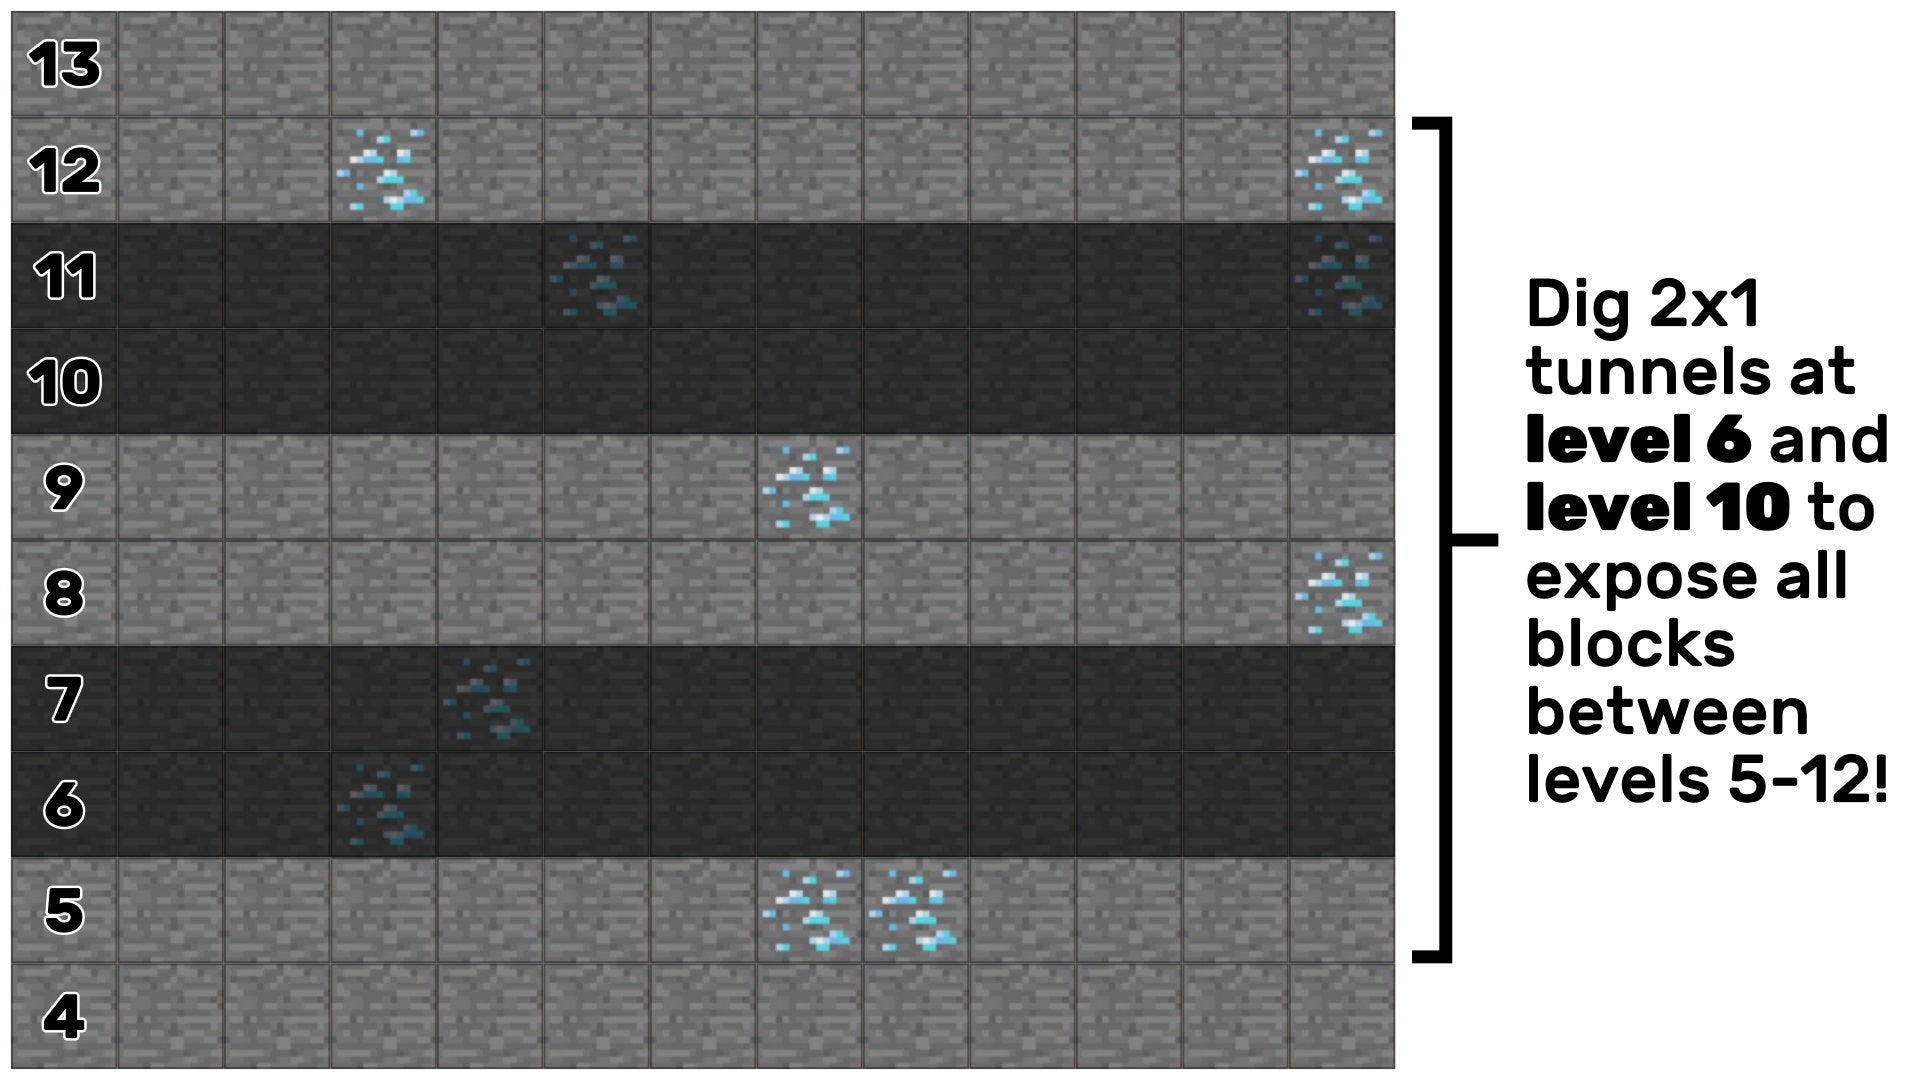 Una maqueta 2D de Minecraft que muestra que dos túneles 2x1 extraídos en el nivel 6 y el nivel 10 expondrán todos los bloques entre los niveles 5-12.